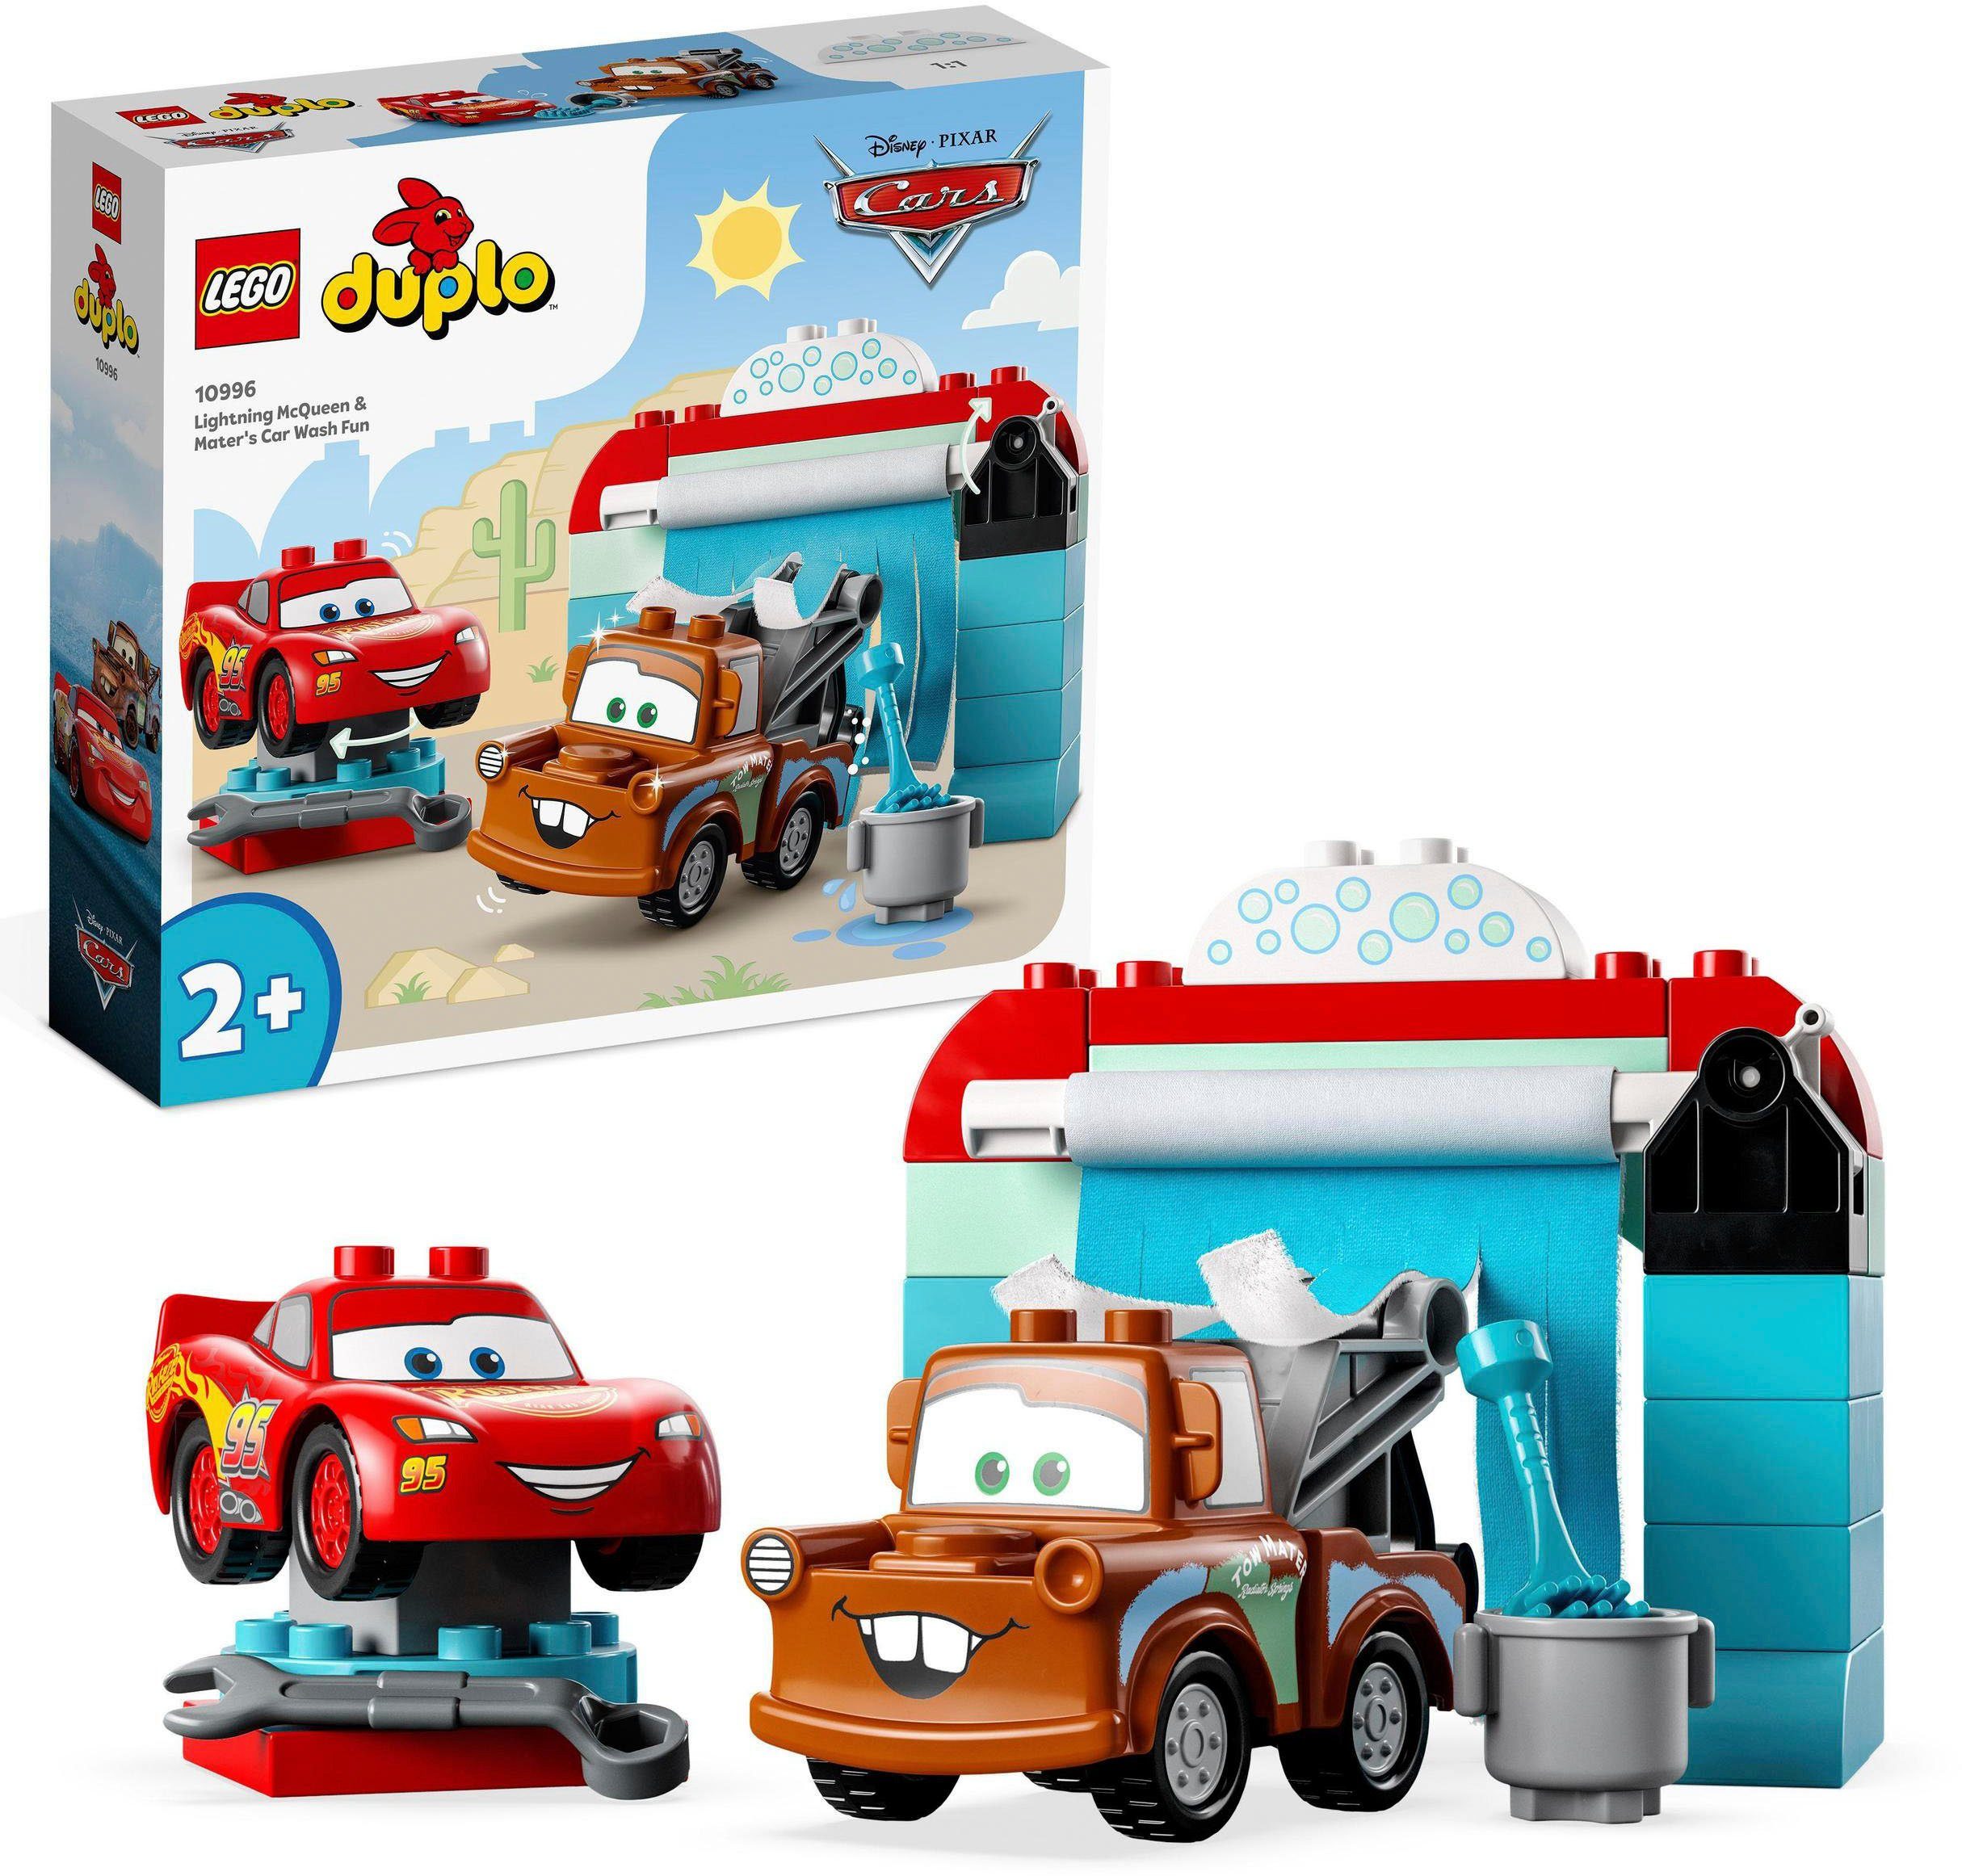 LEGO® Konstruktionsspielsteine Lightning McQueen und Mater in der Waschanlage (10996), LEGO® DUPLO, (29 St), LEGO® DUPLO Disney and Pixar’s Cars; Made in Europe